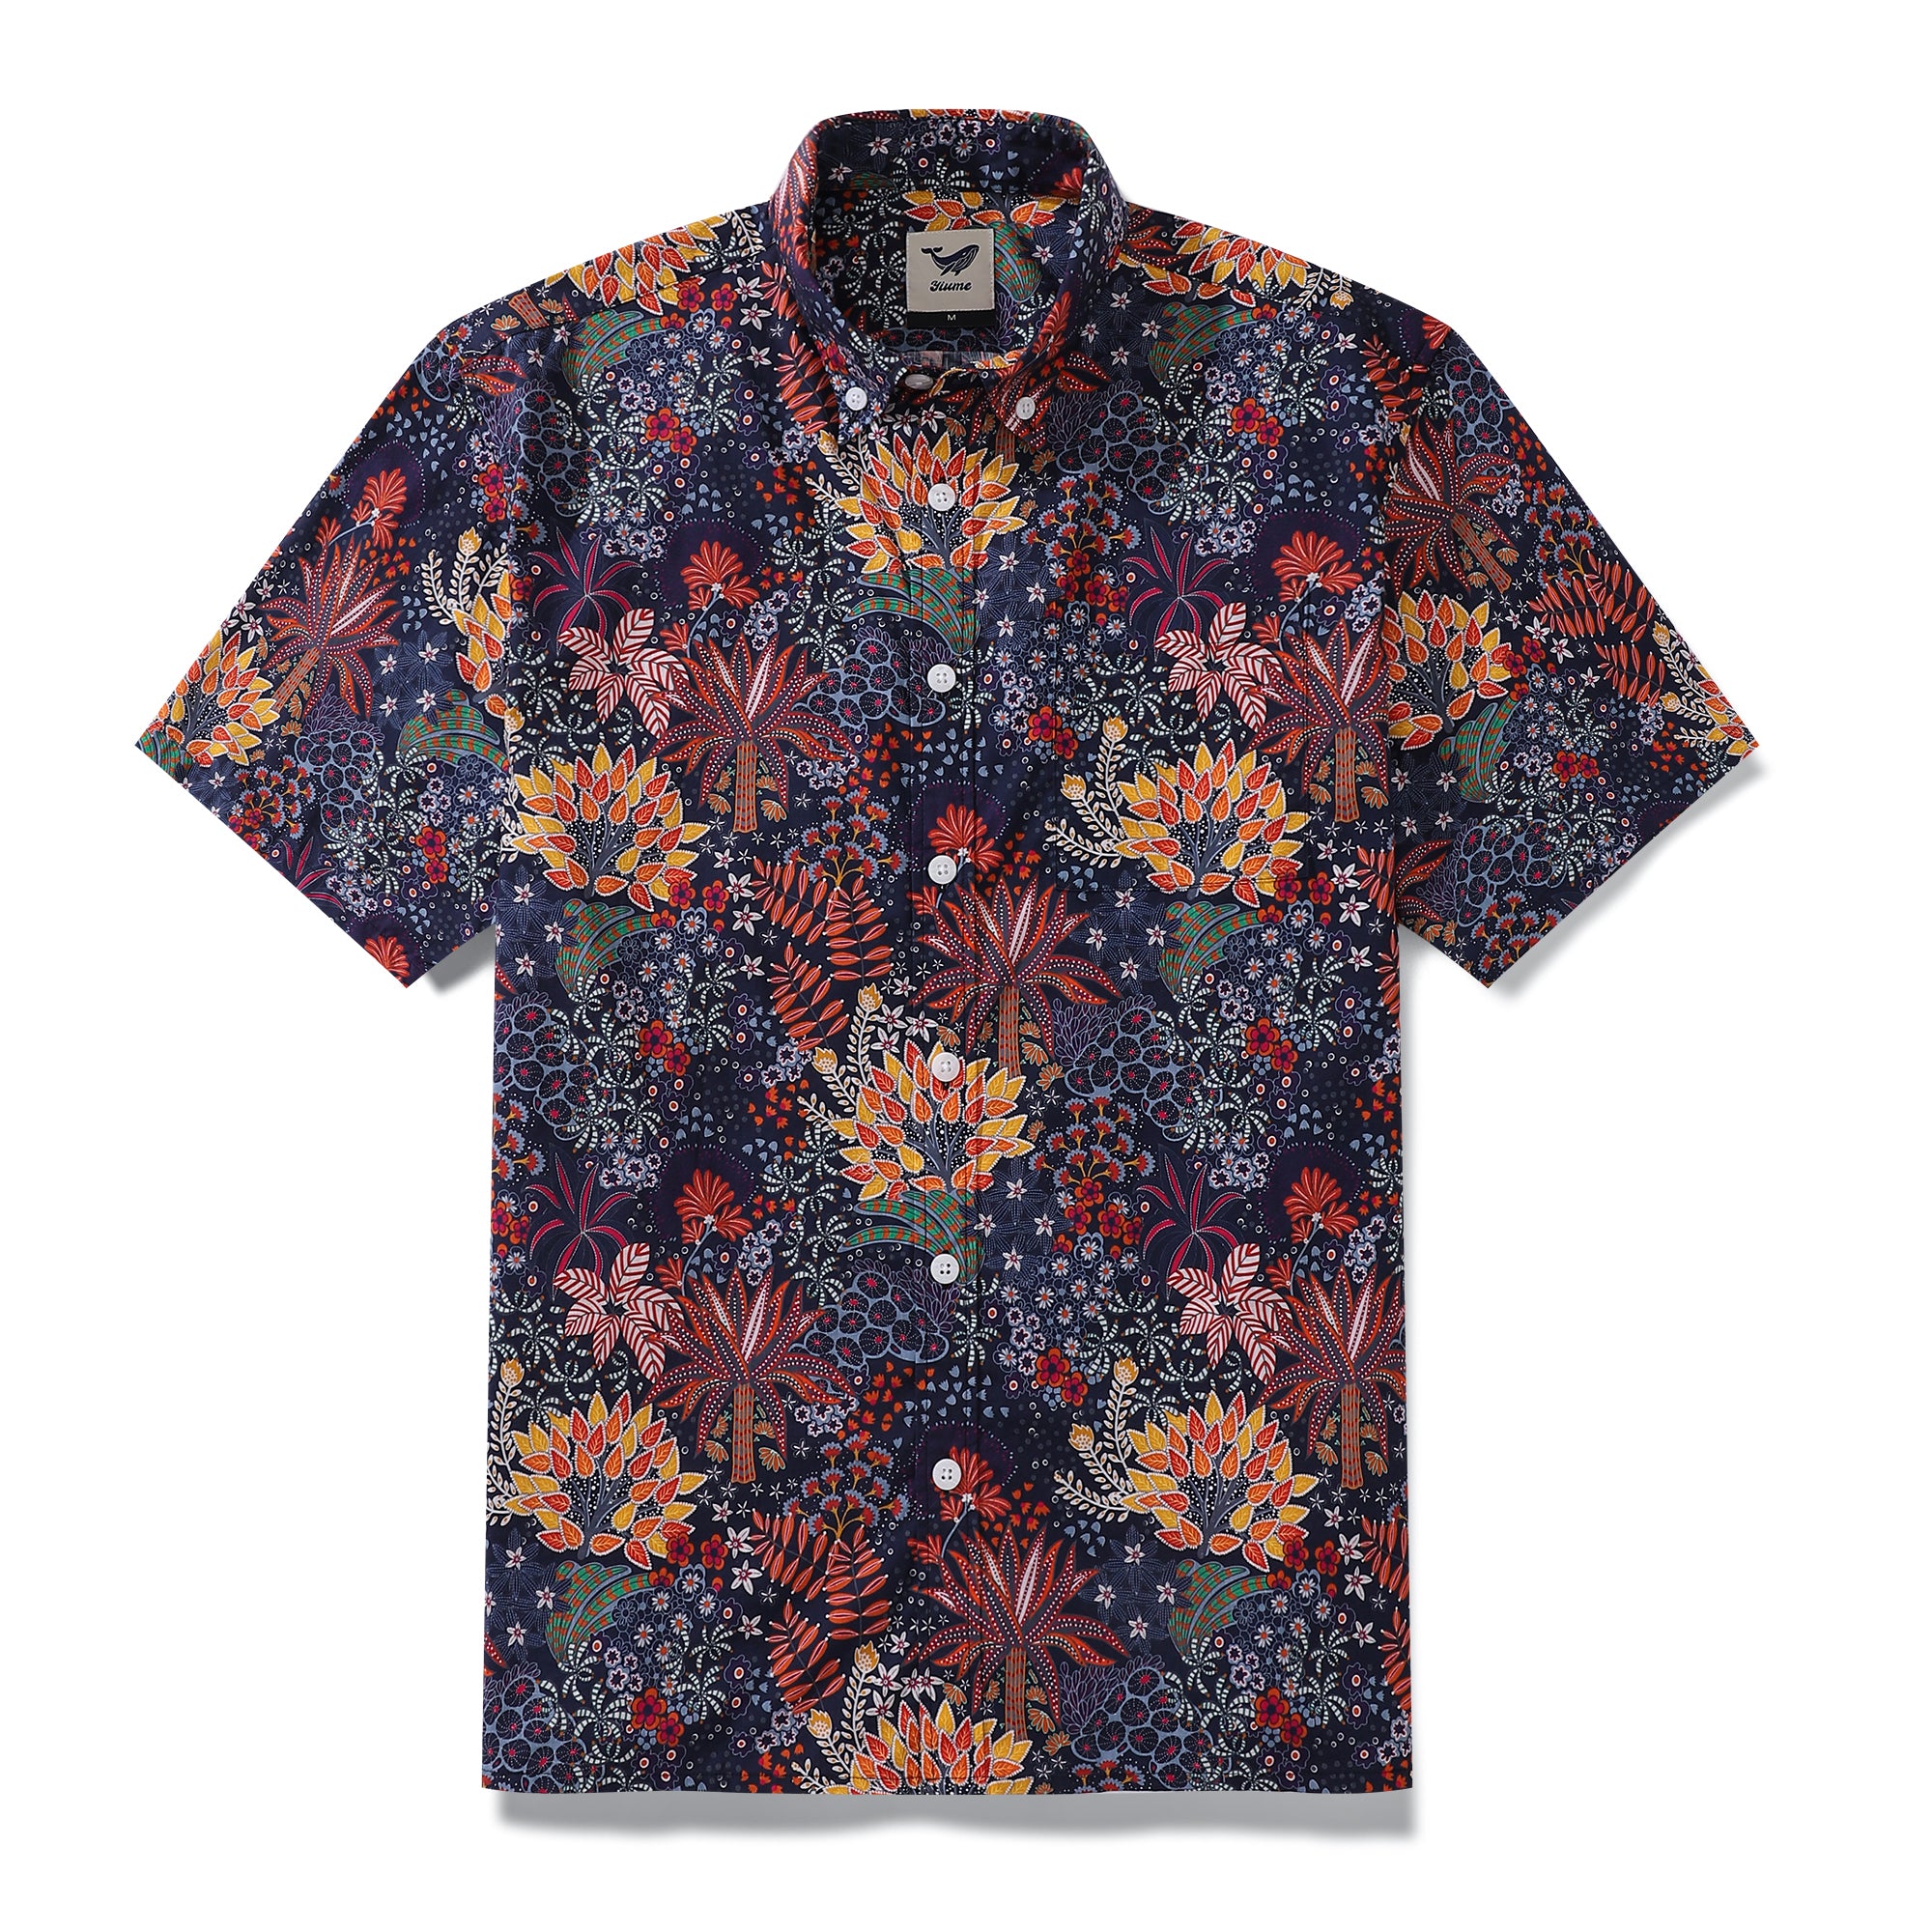 メンズ アロハシャツ 風変わりな植物プリント コットン ボタンダウン 半袖 アロハシャツ